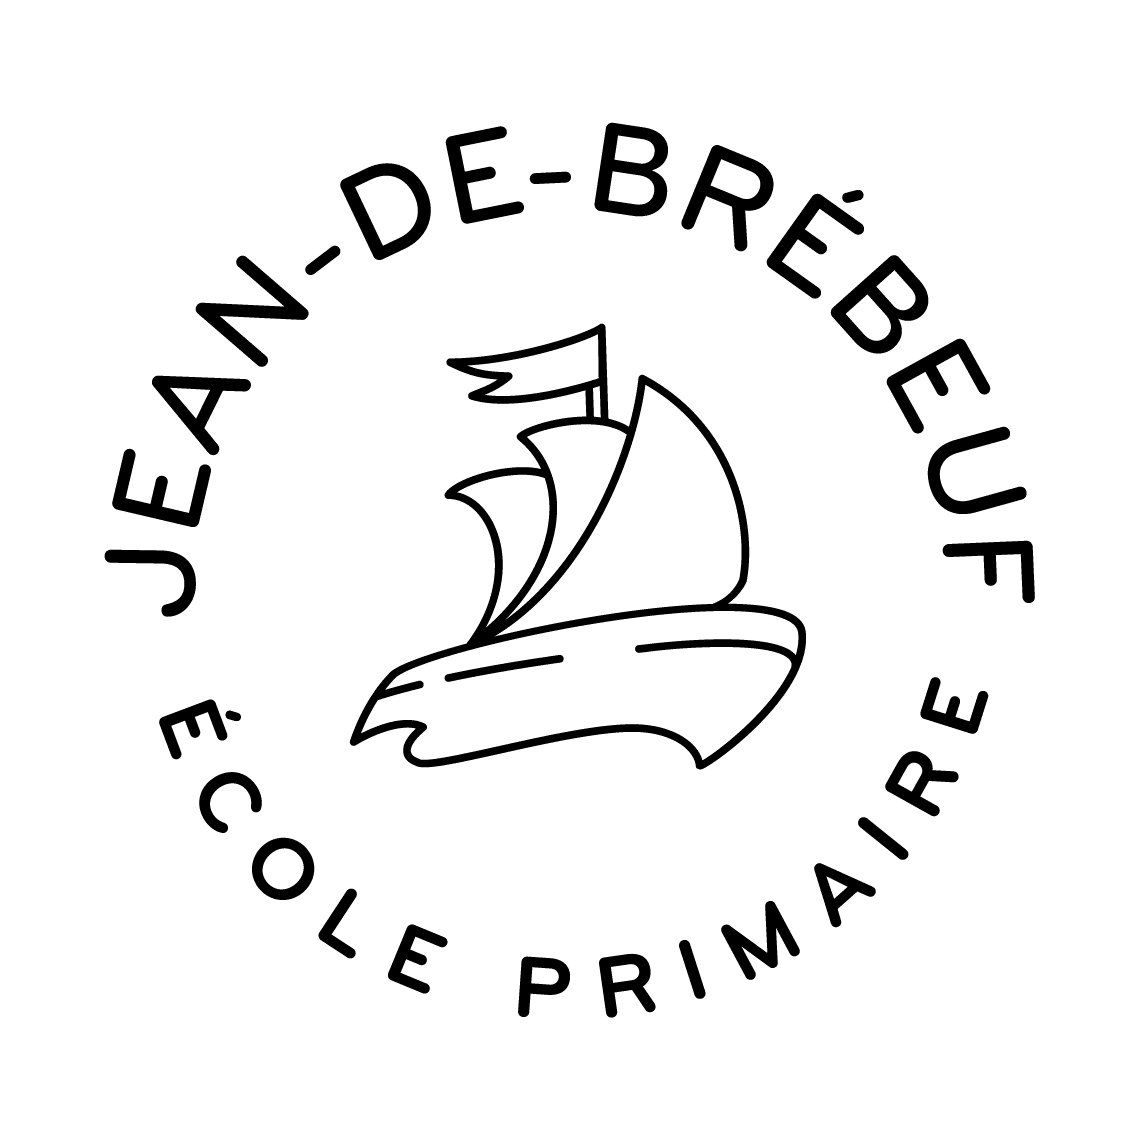 École Jean-de-Brébeuf